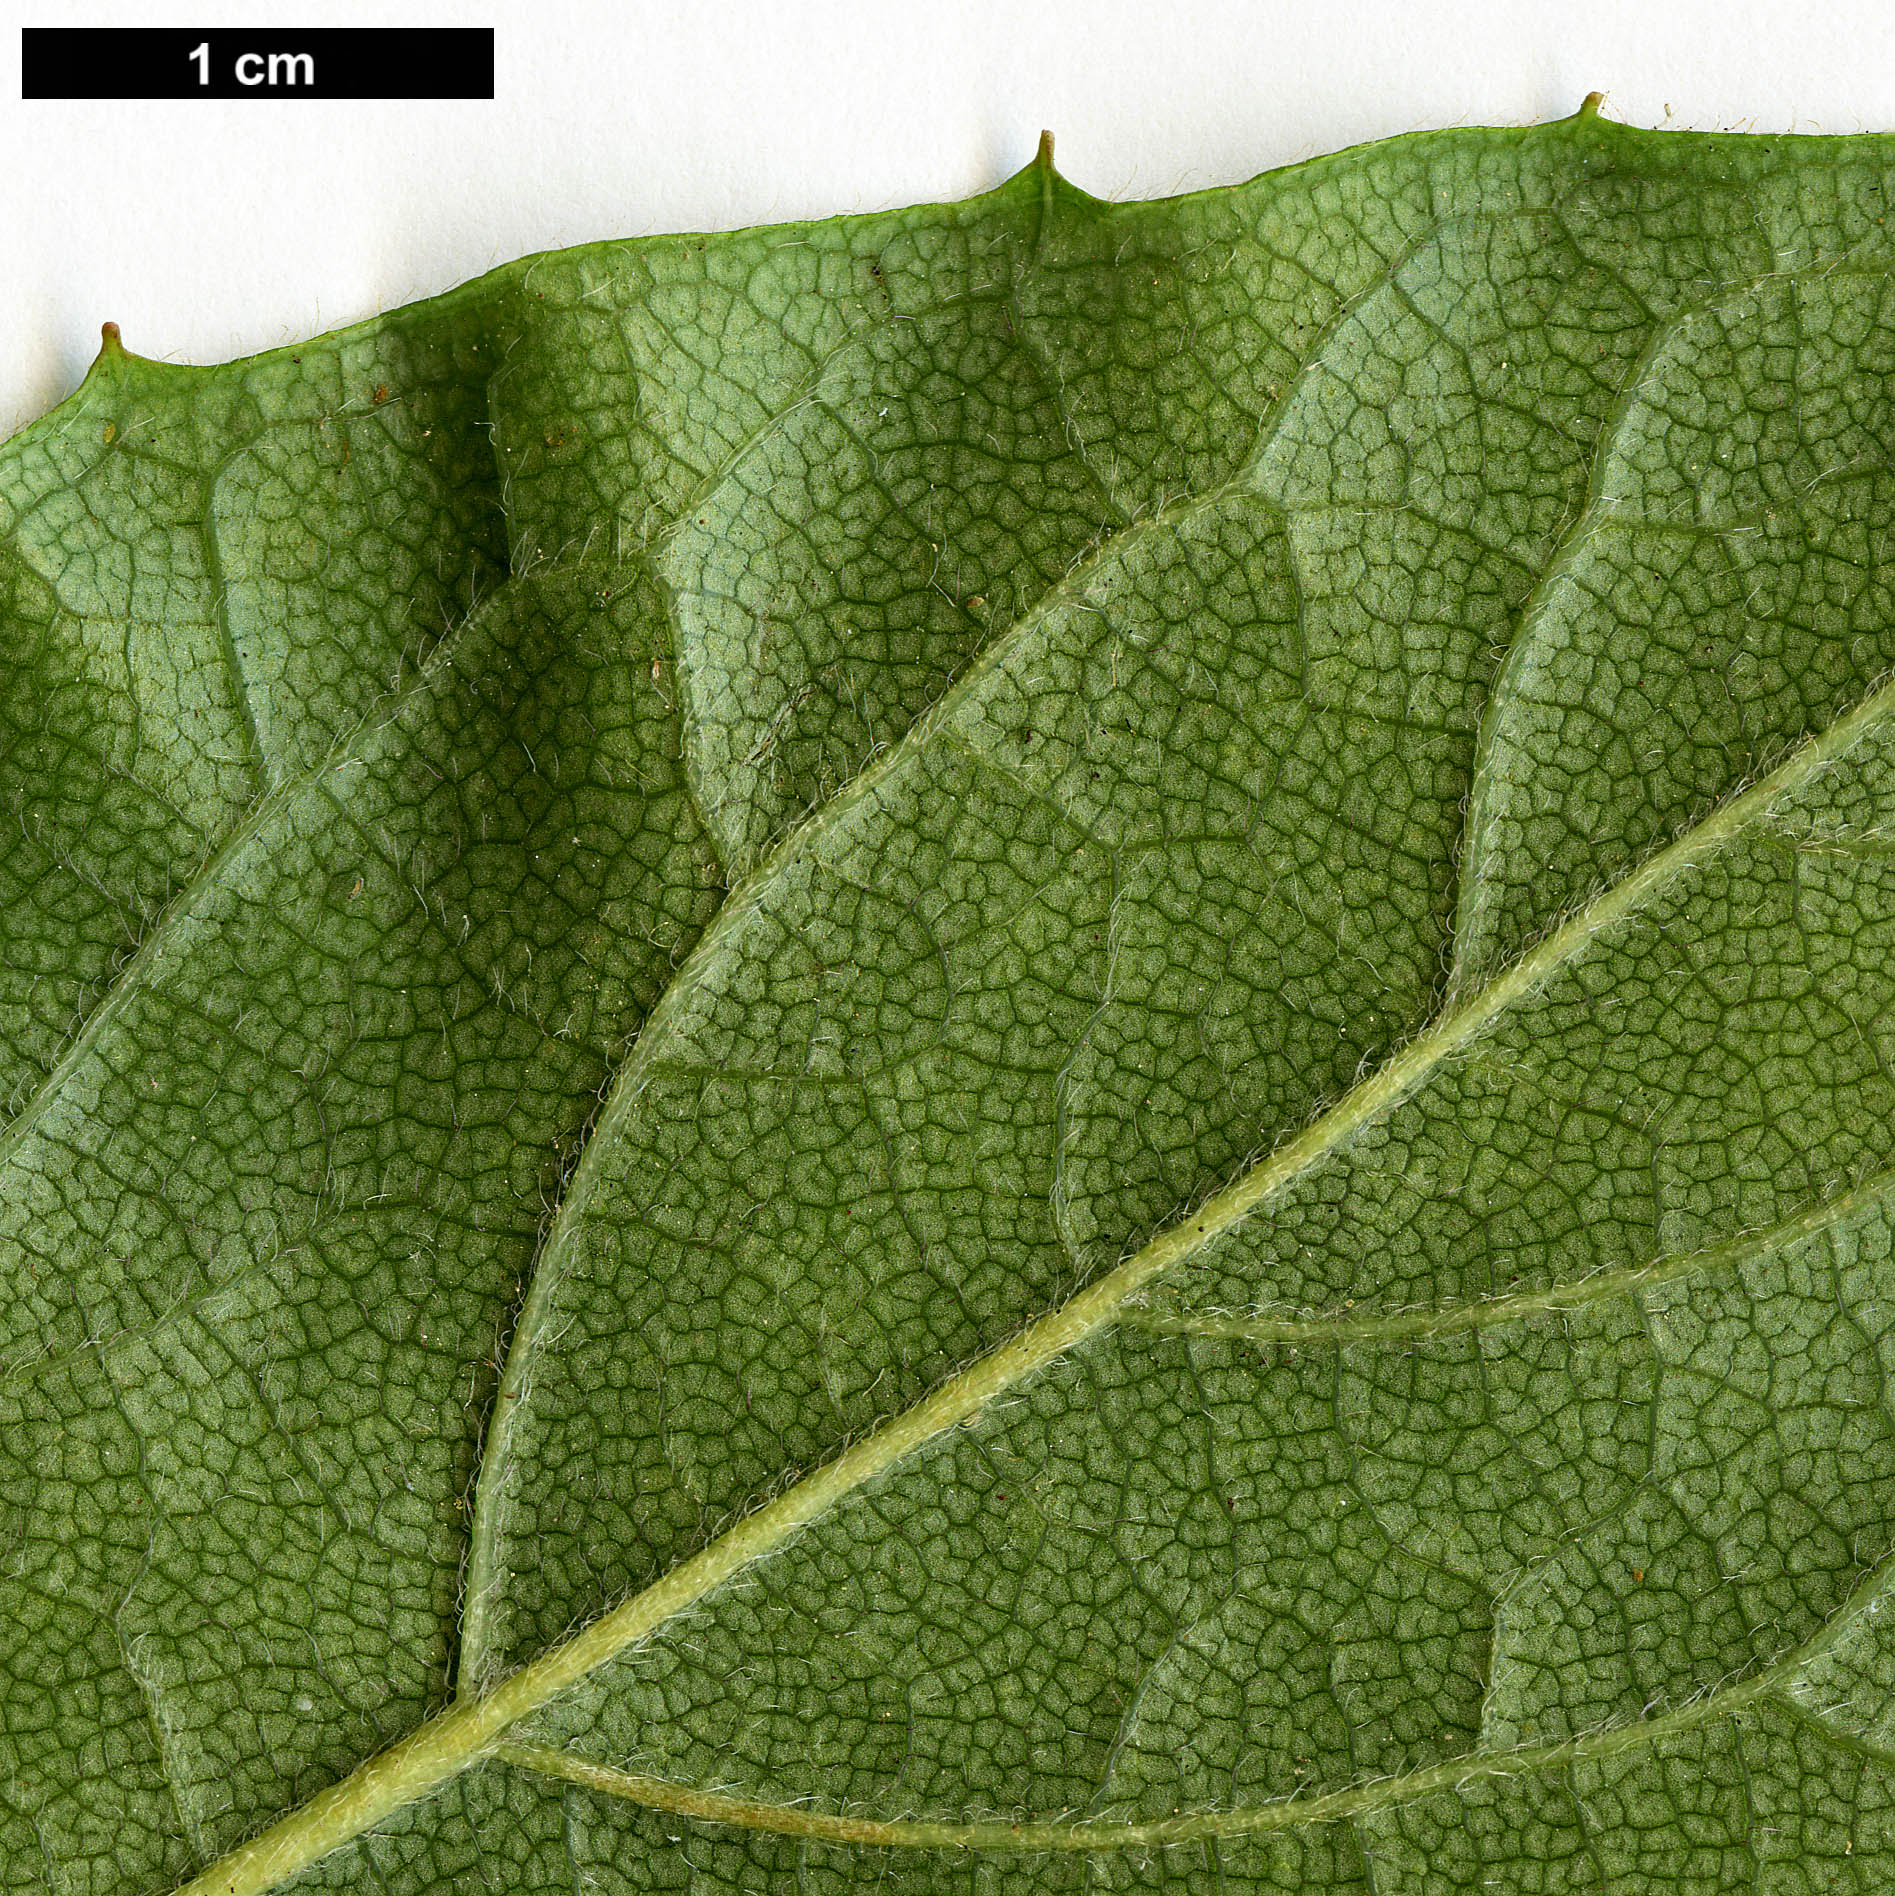 High resolution image: Family: Hydrangeaceae - Genus: Schizophragma - Taxon: hydrangeoides - SpeciesSub: f. quelpartensis